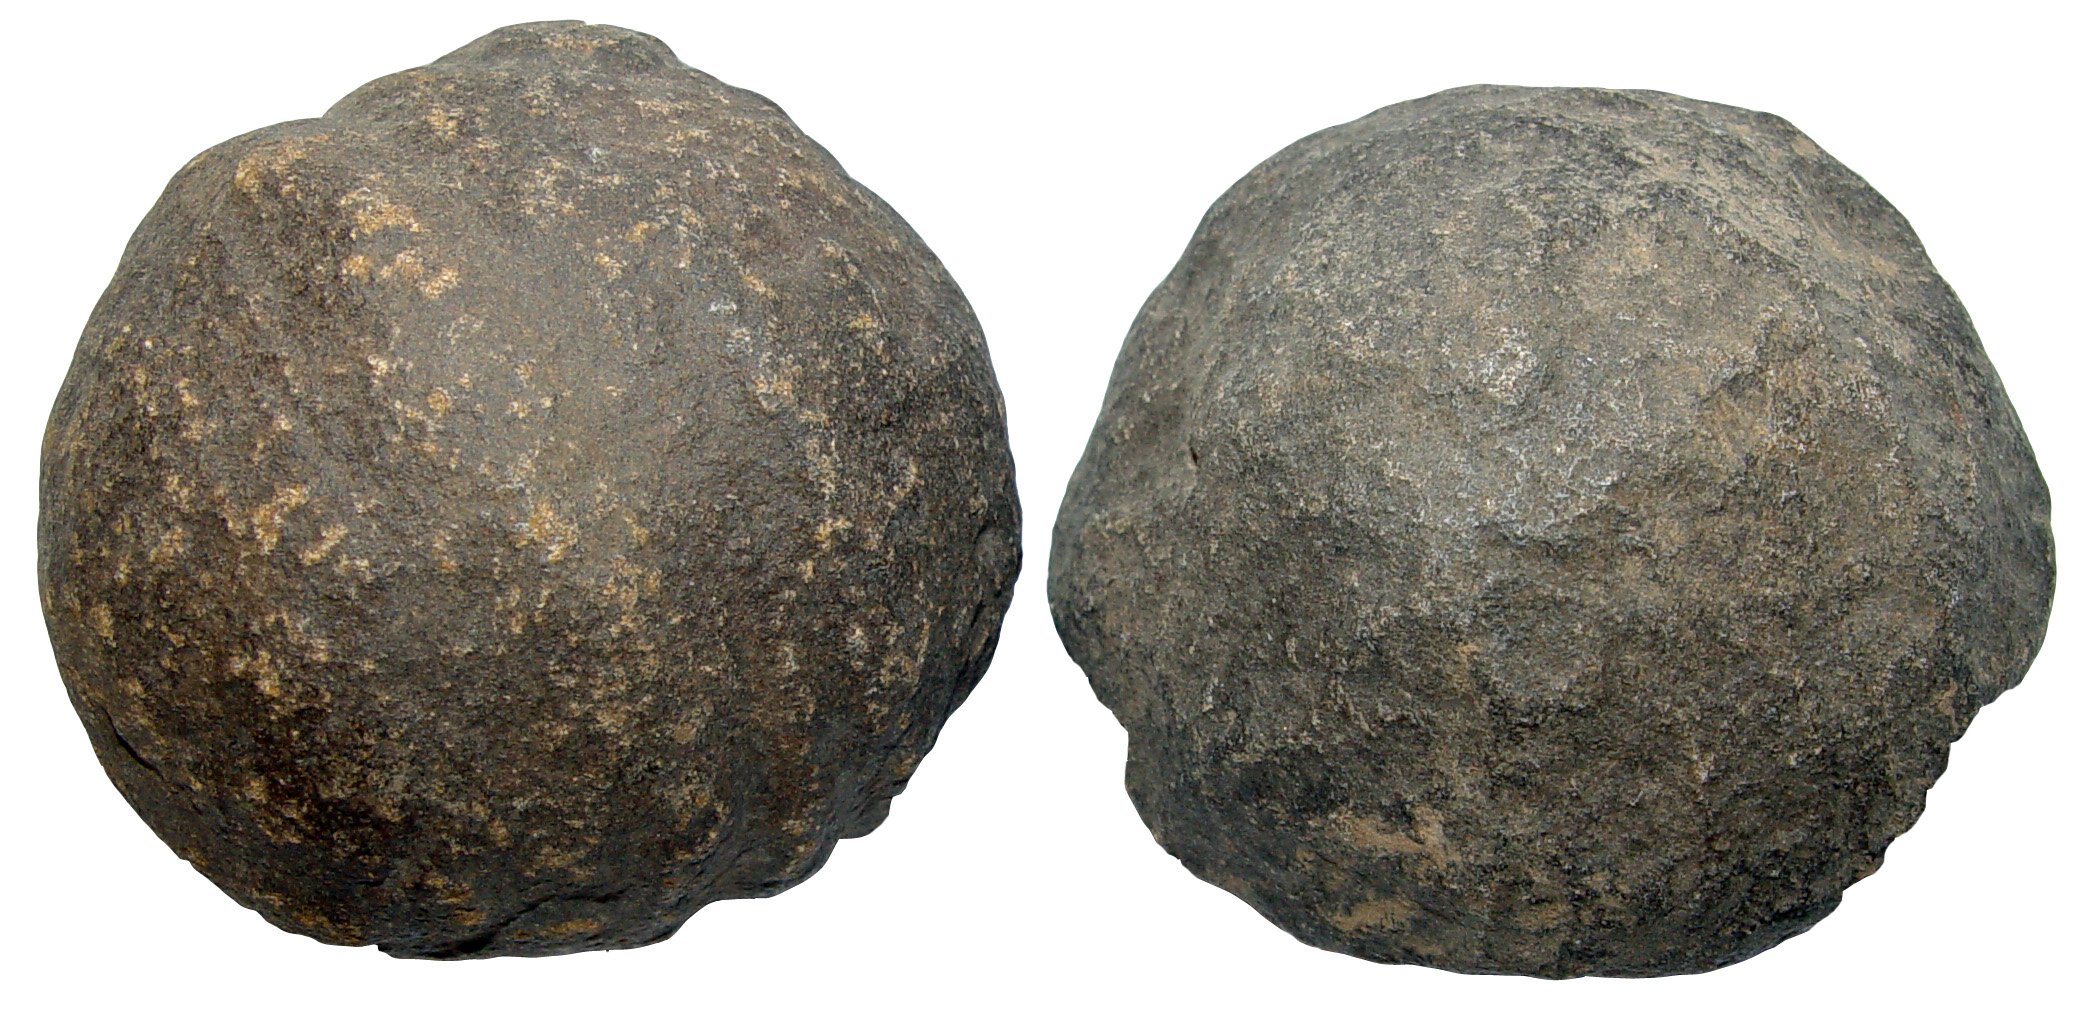 1 Paar Moqui Marbles lebende Steine ca. 30 - 35 mm aus den USA(2246)